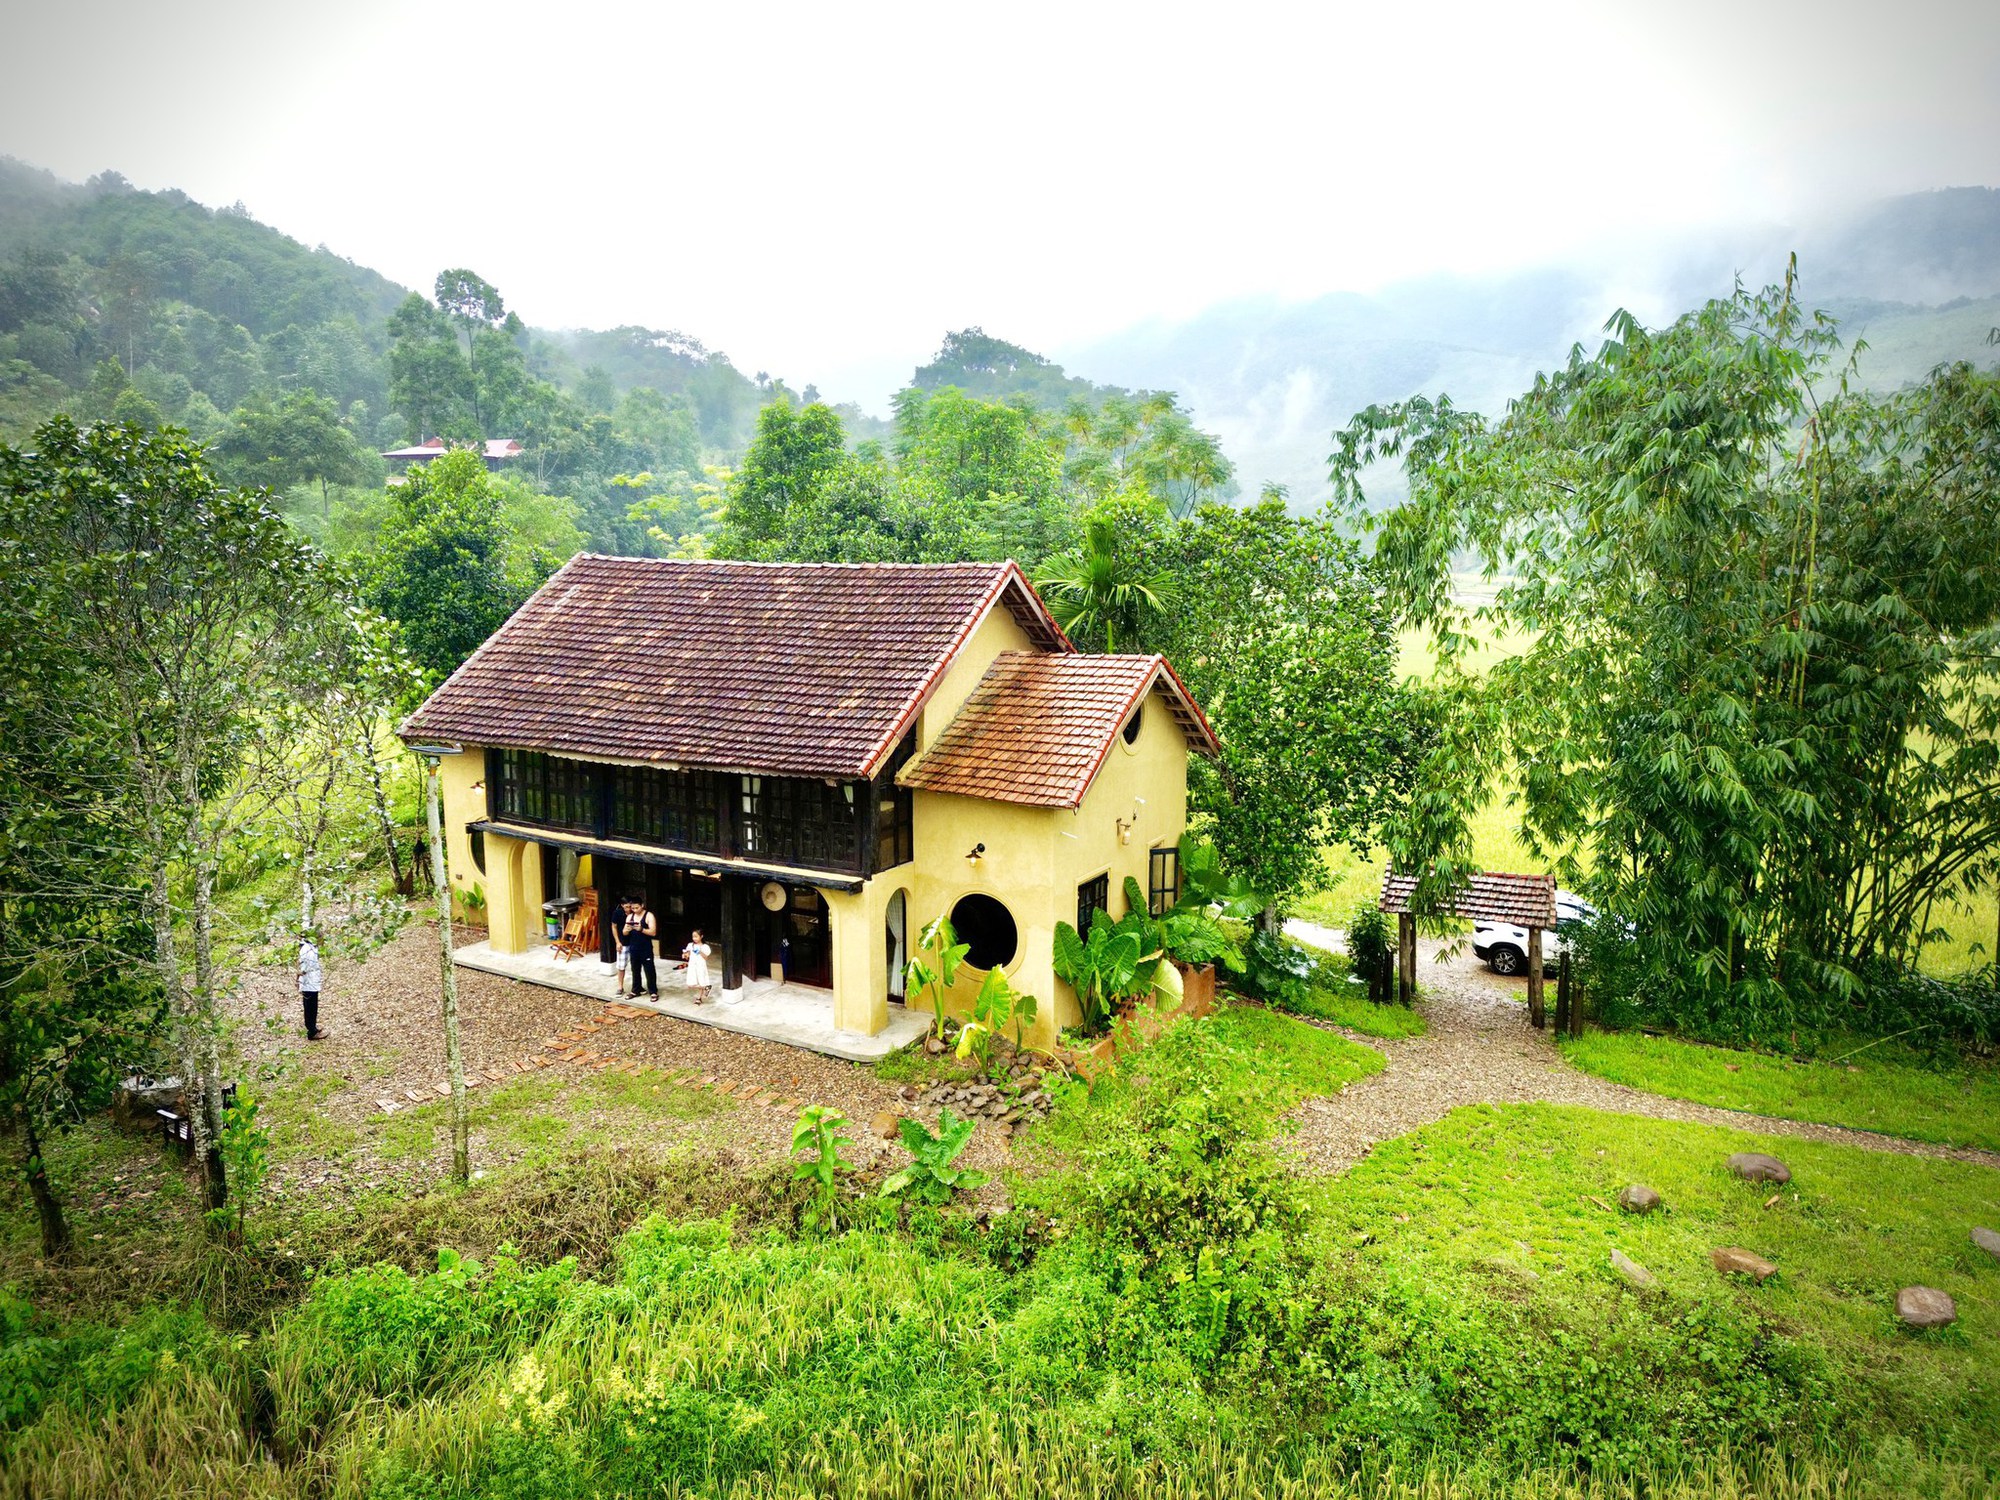 Hãy ngắm nhìn thiết kế ngôi nhà làng quê tuyệt đẹp trong hình ảnh này! Với vẻ đẹp đơn giản nhưng đầy ấm cúng, ngôi nhà làng quê chắc chắn sẽ khiến bạn thích thú và muốn tìm hiểu thêm về kiến trúc truyền thống của Việt Nam.